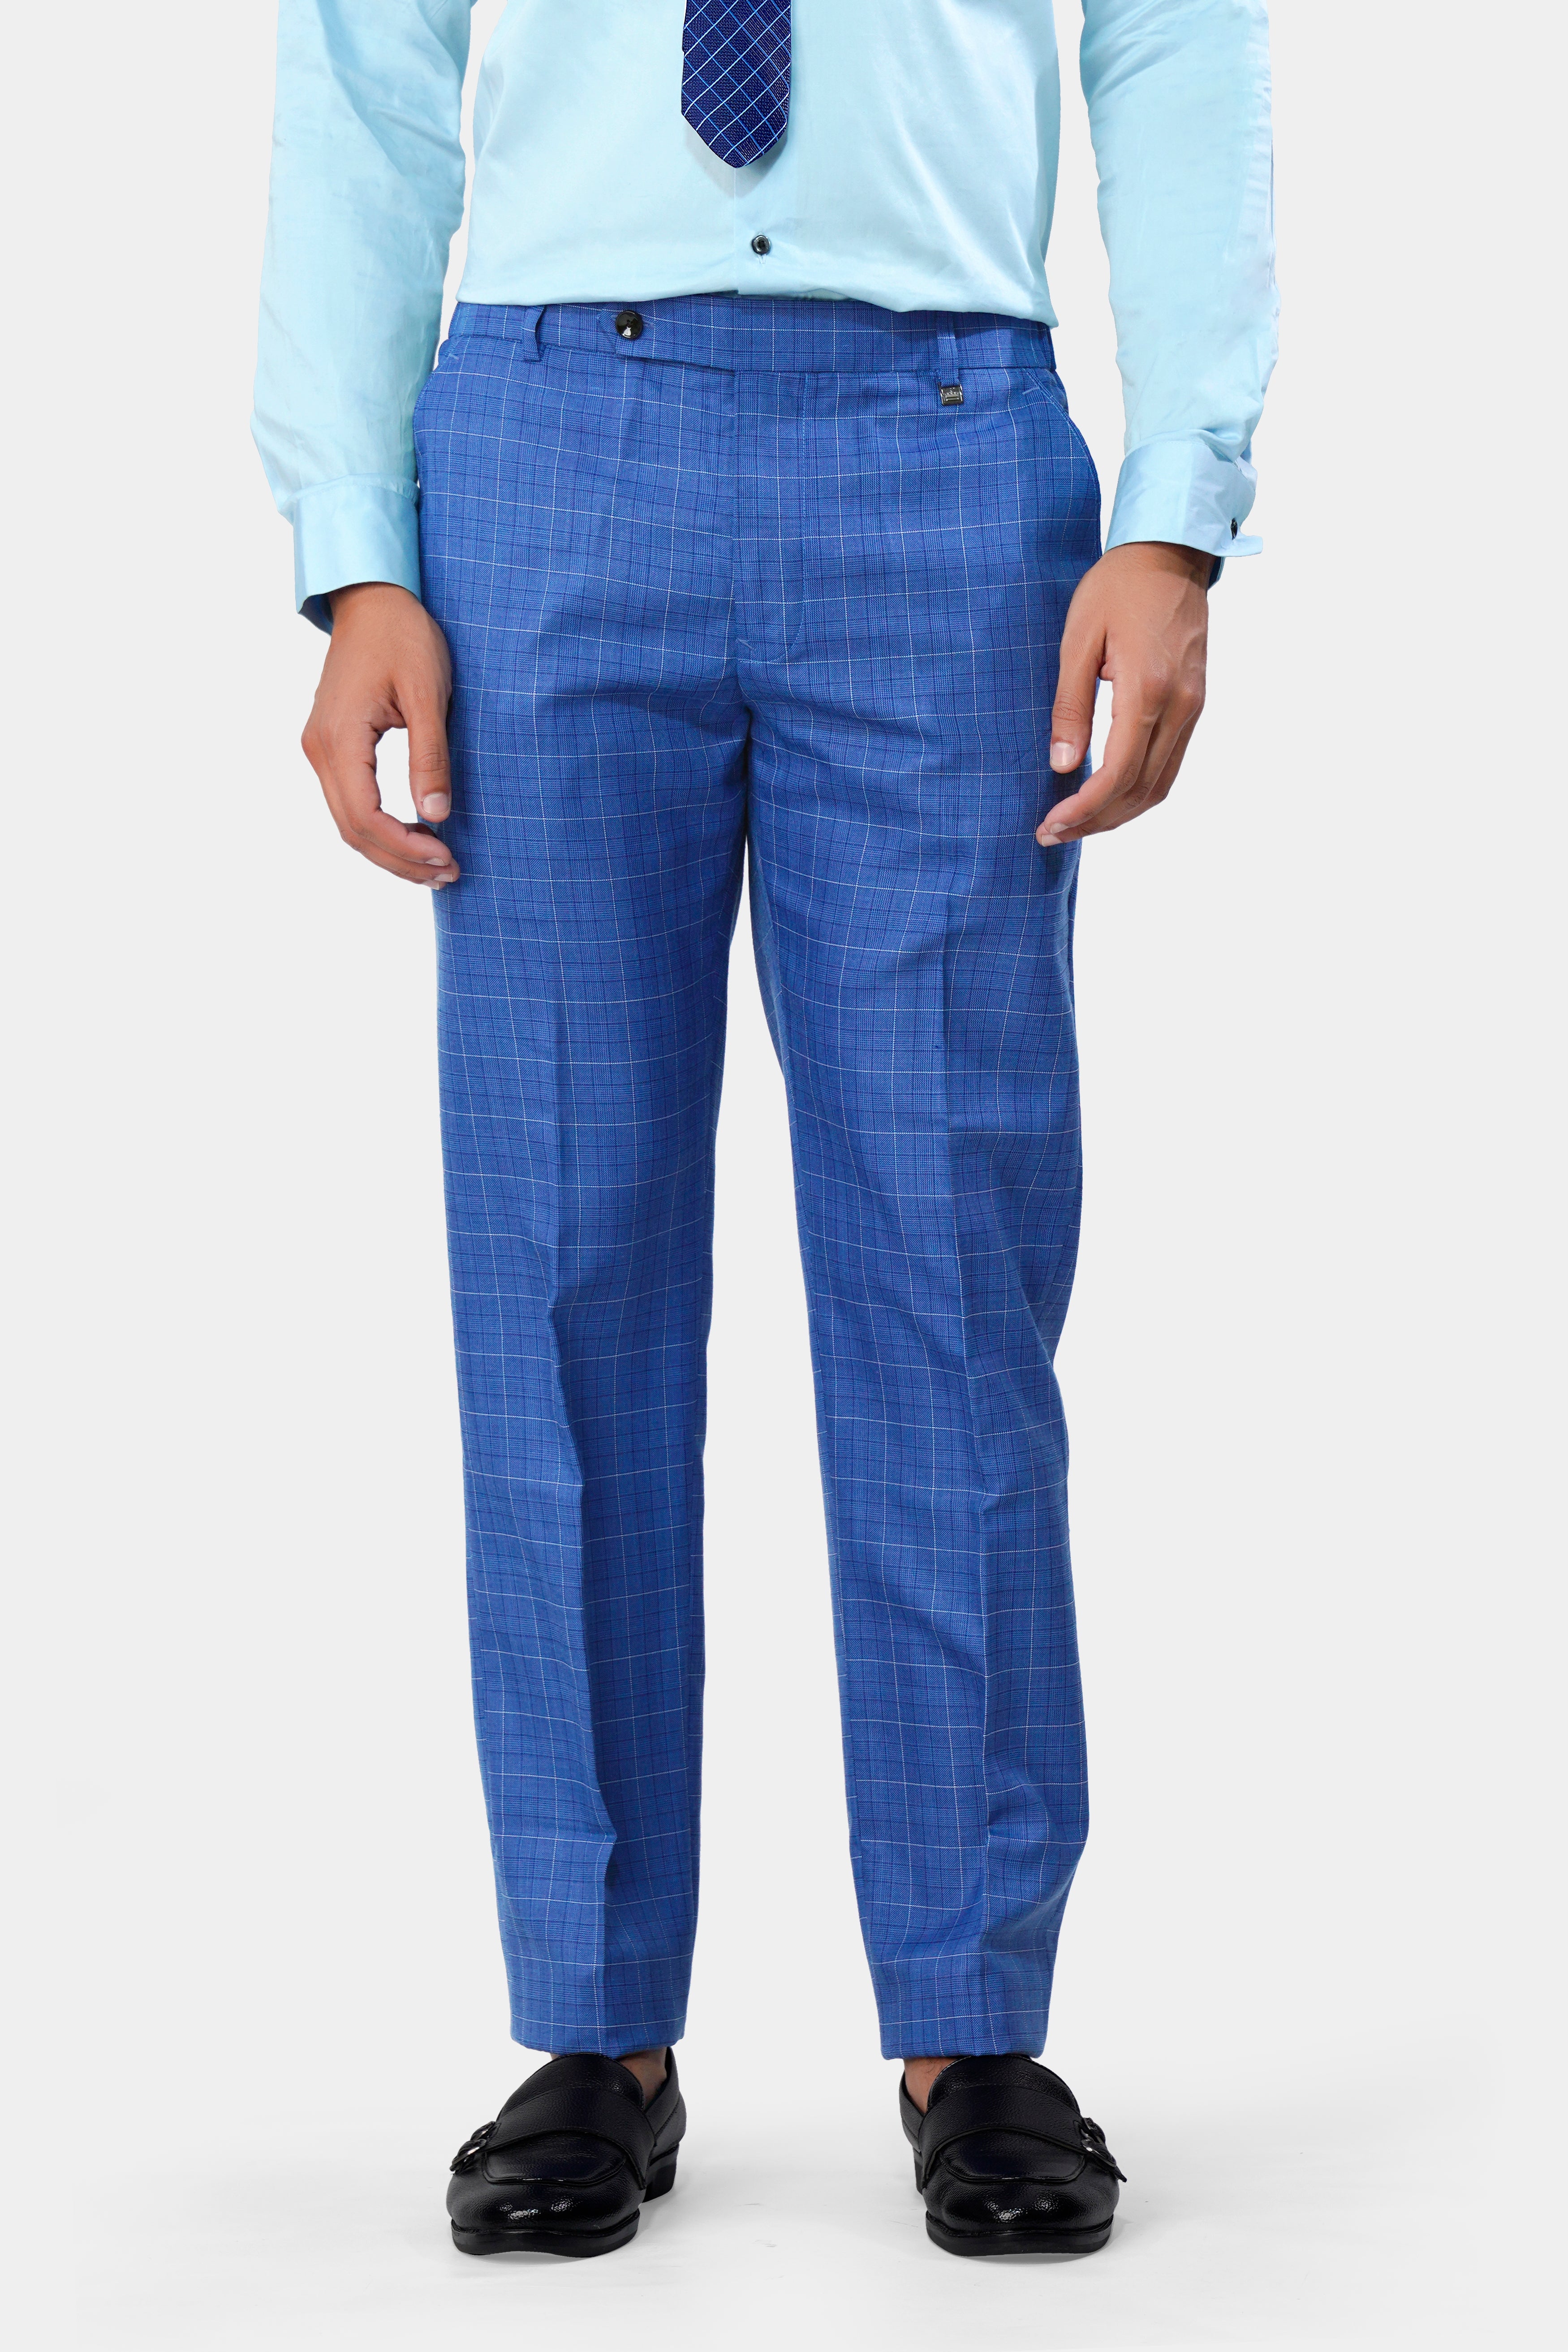 Cobalt Pant Suit -  Canada